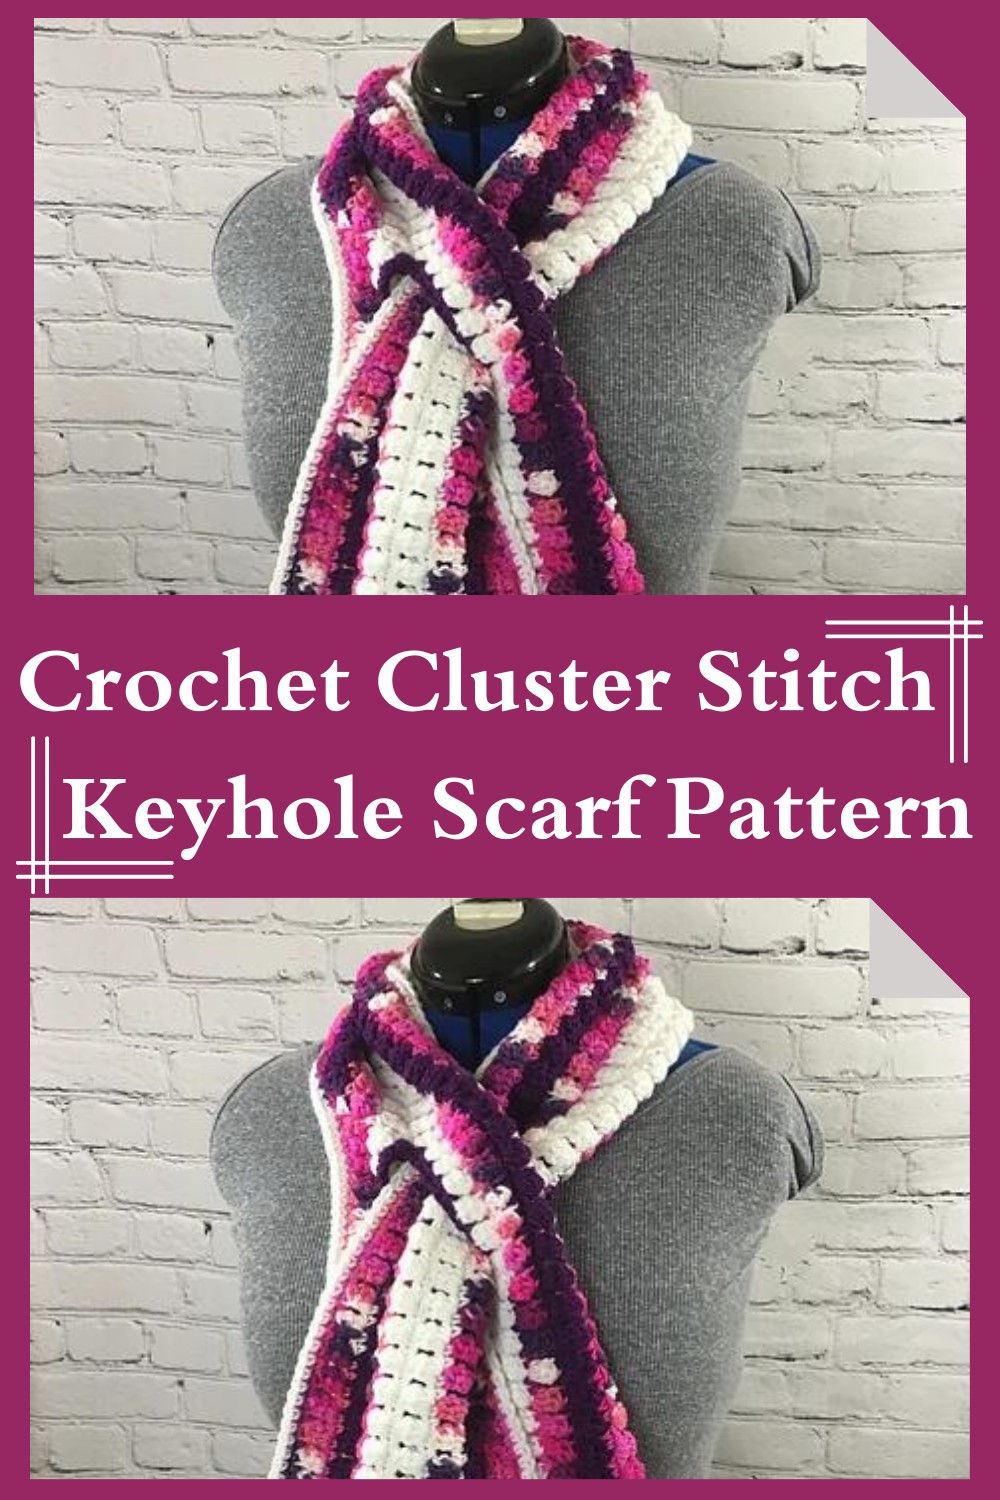 Crochet Cluster Stitch Keyhole Scarf Pattern